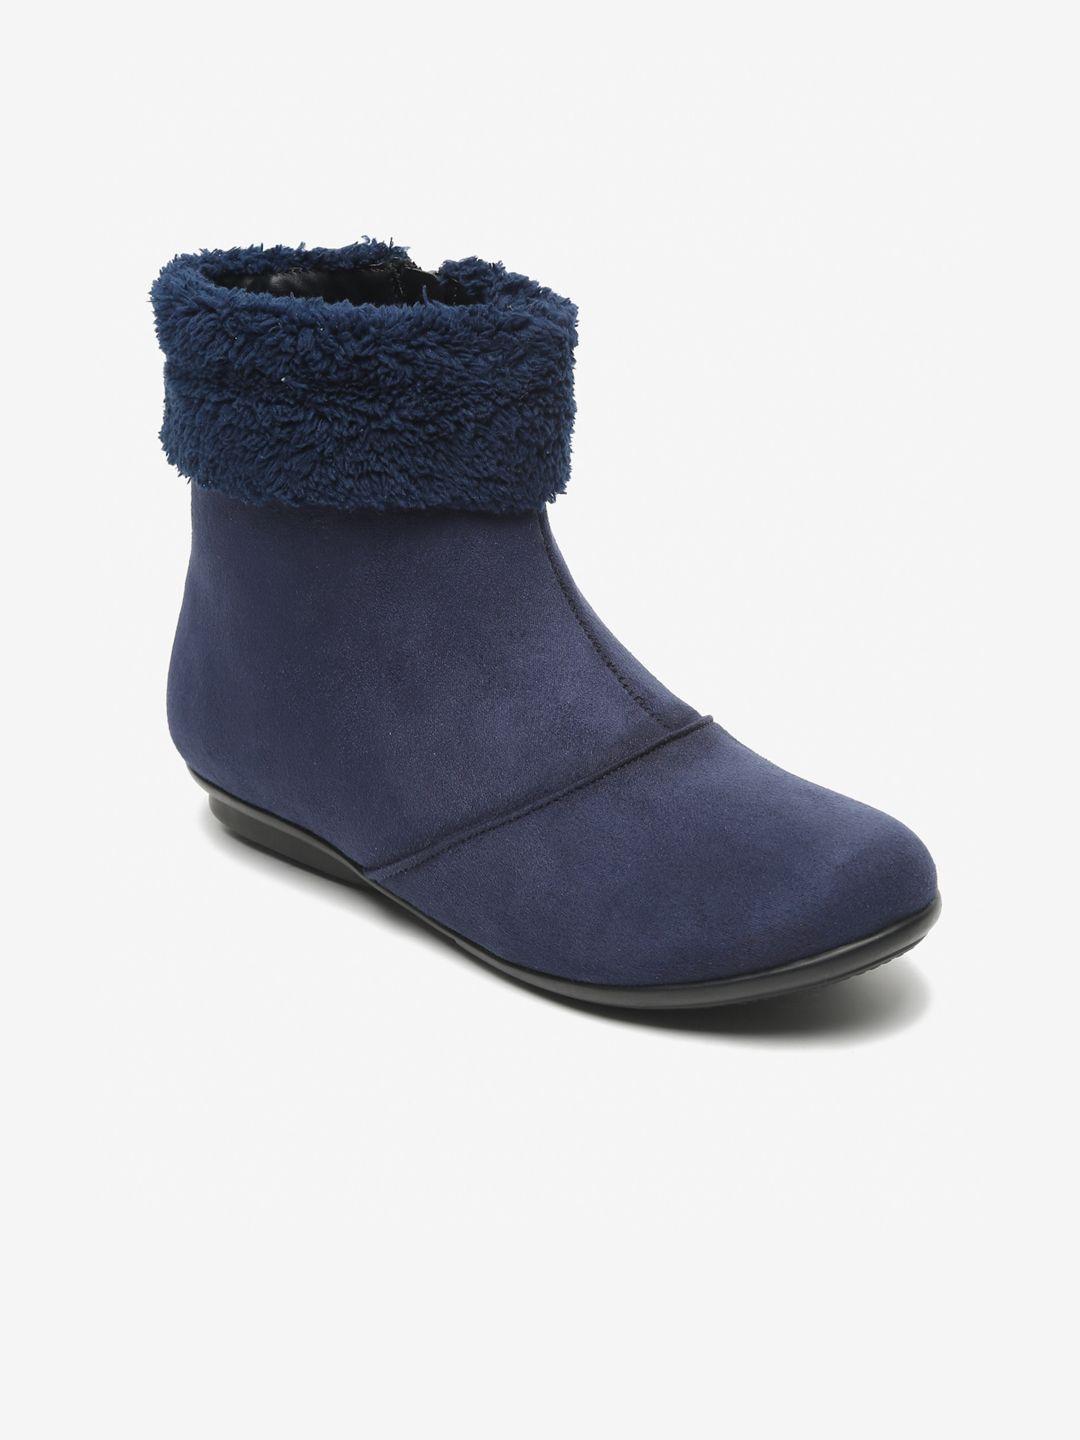 flat n heels women winter boots